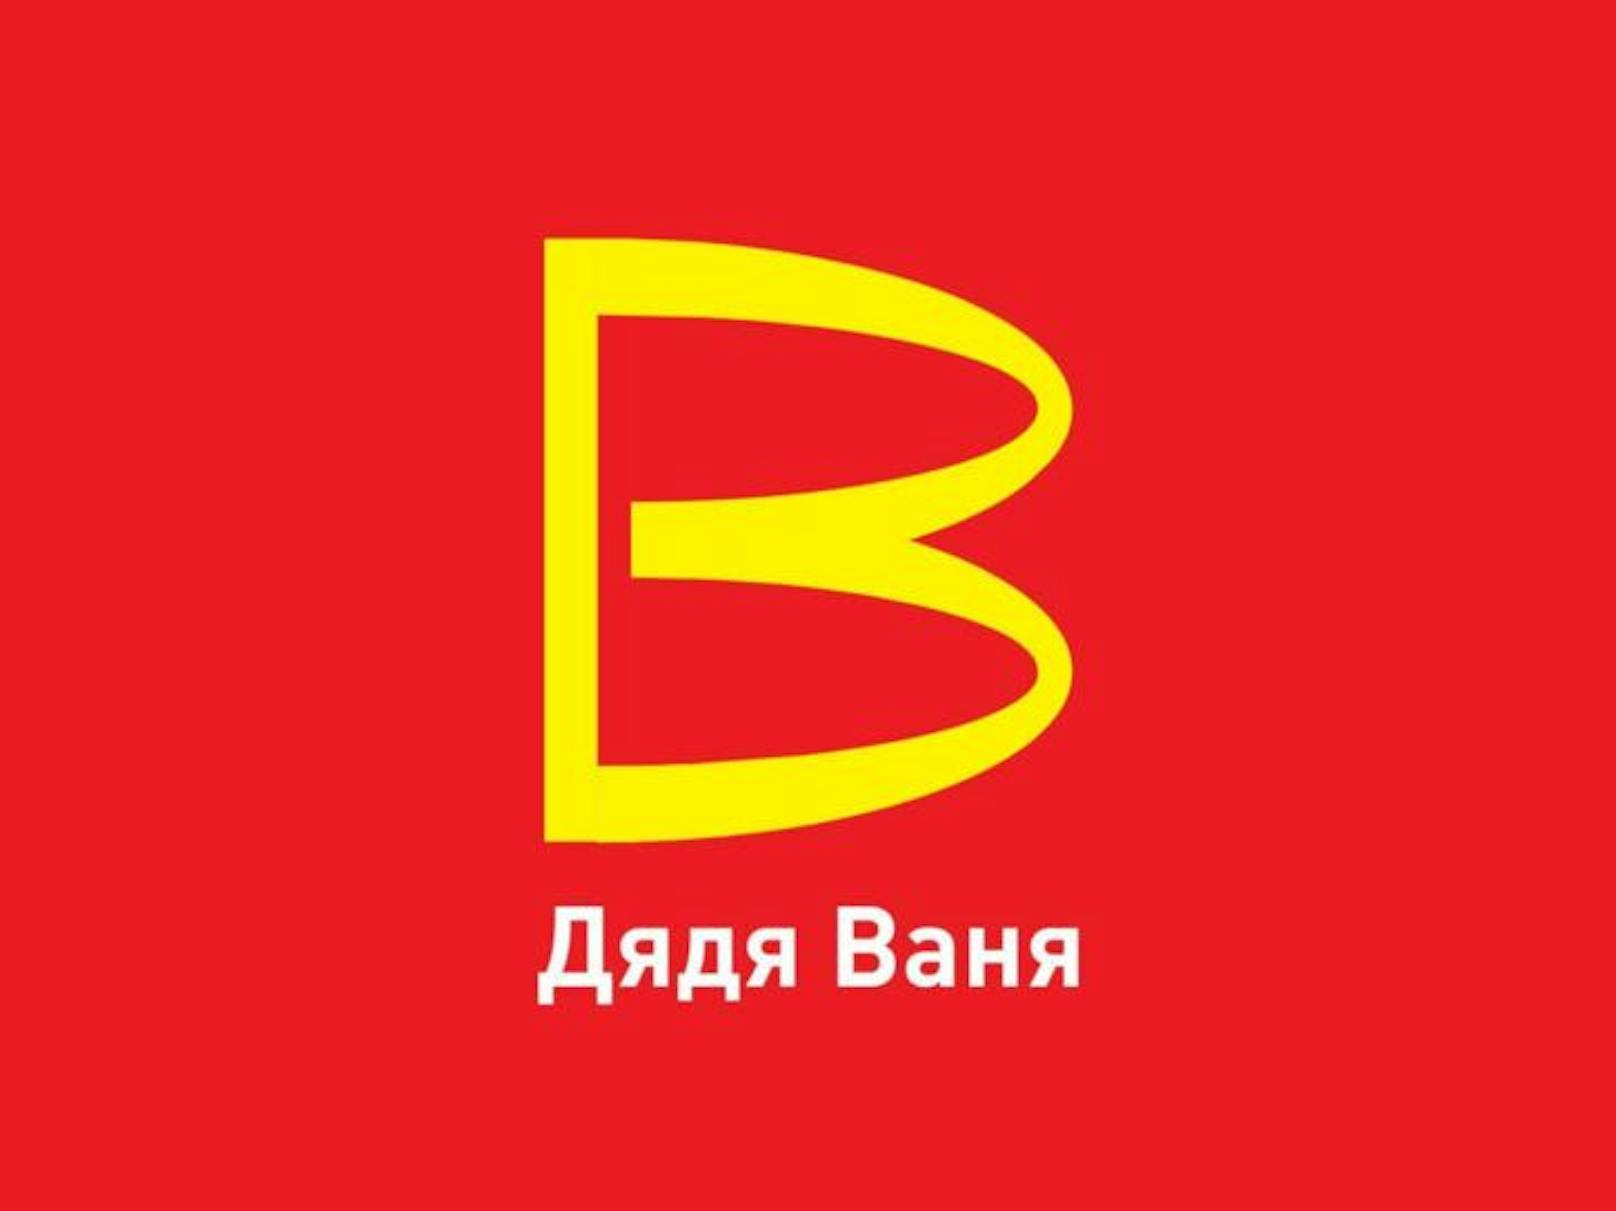 Beim gelben Buchstaben handelt es sich um den kyrillischen Letter "B", welches im lateinischen Schriftsystem einem "V", entspricht.